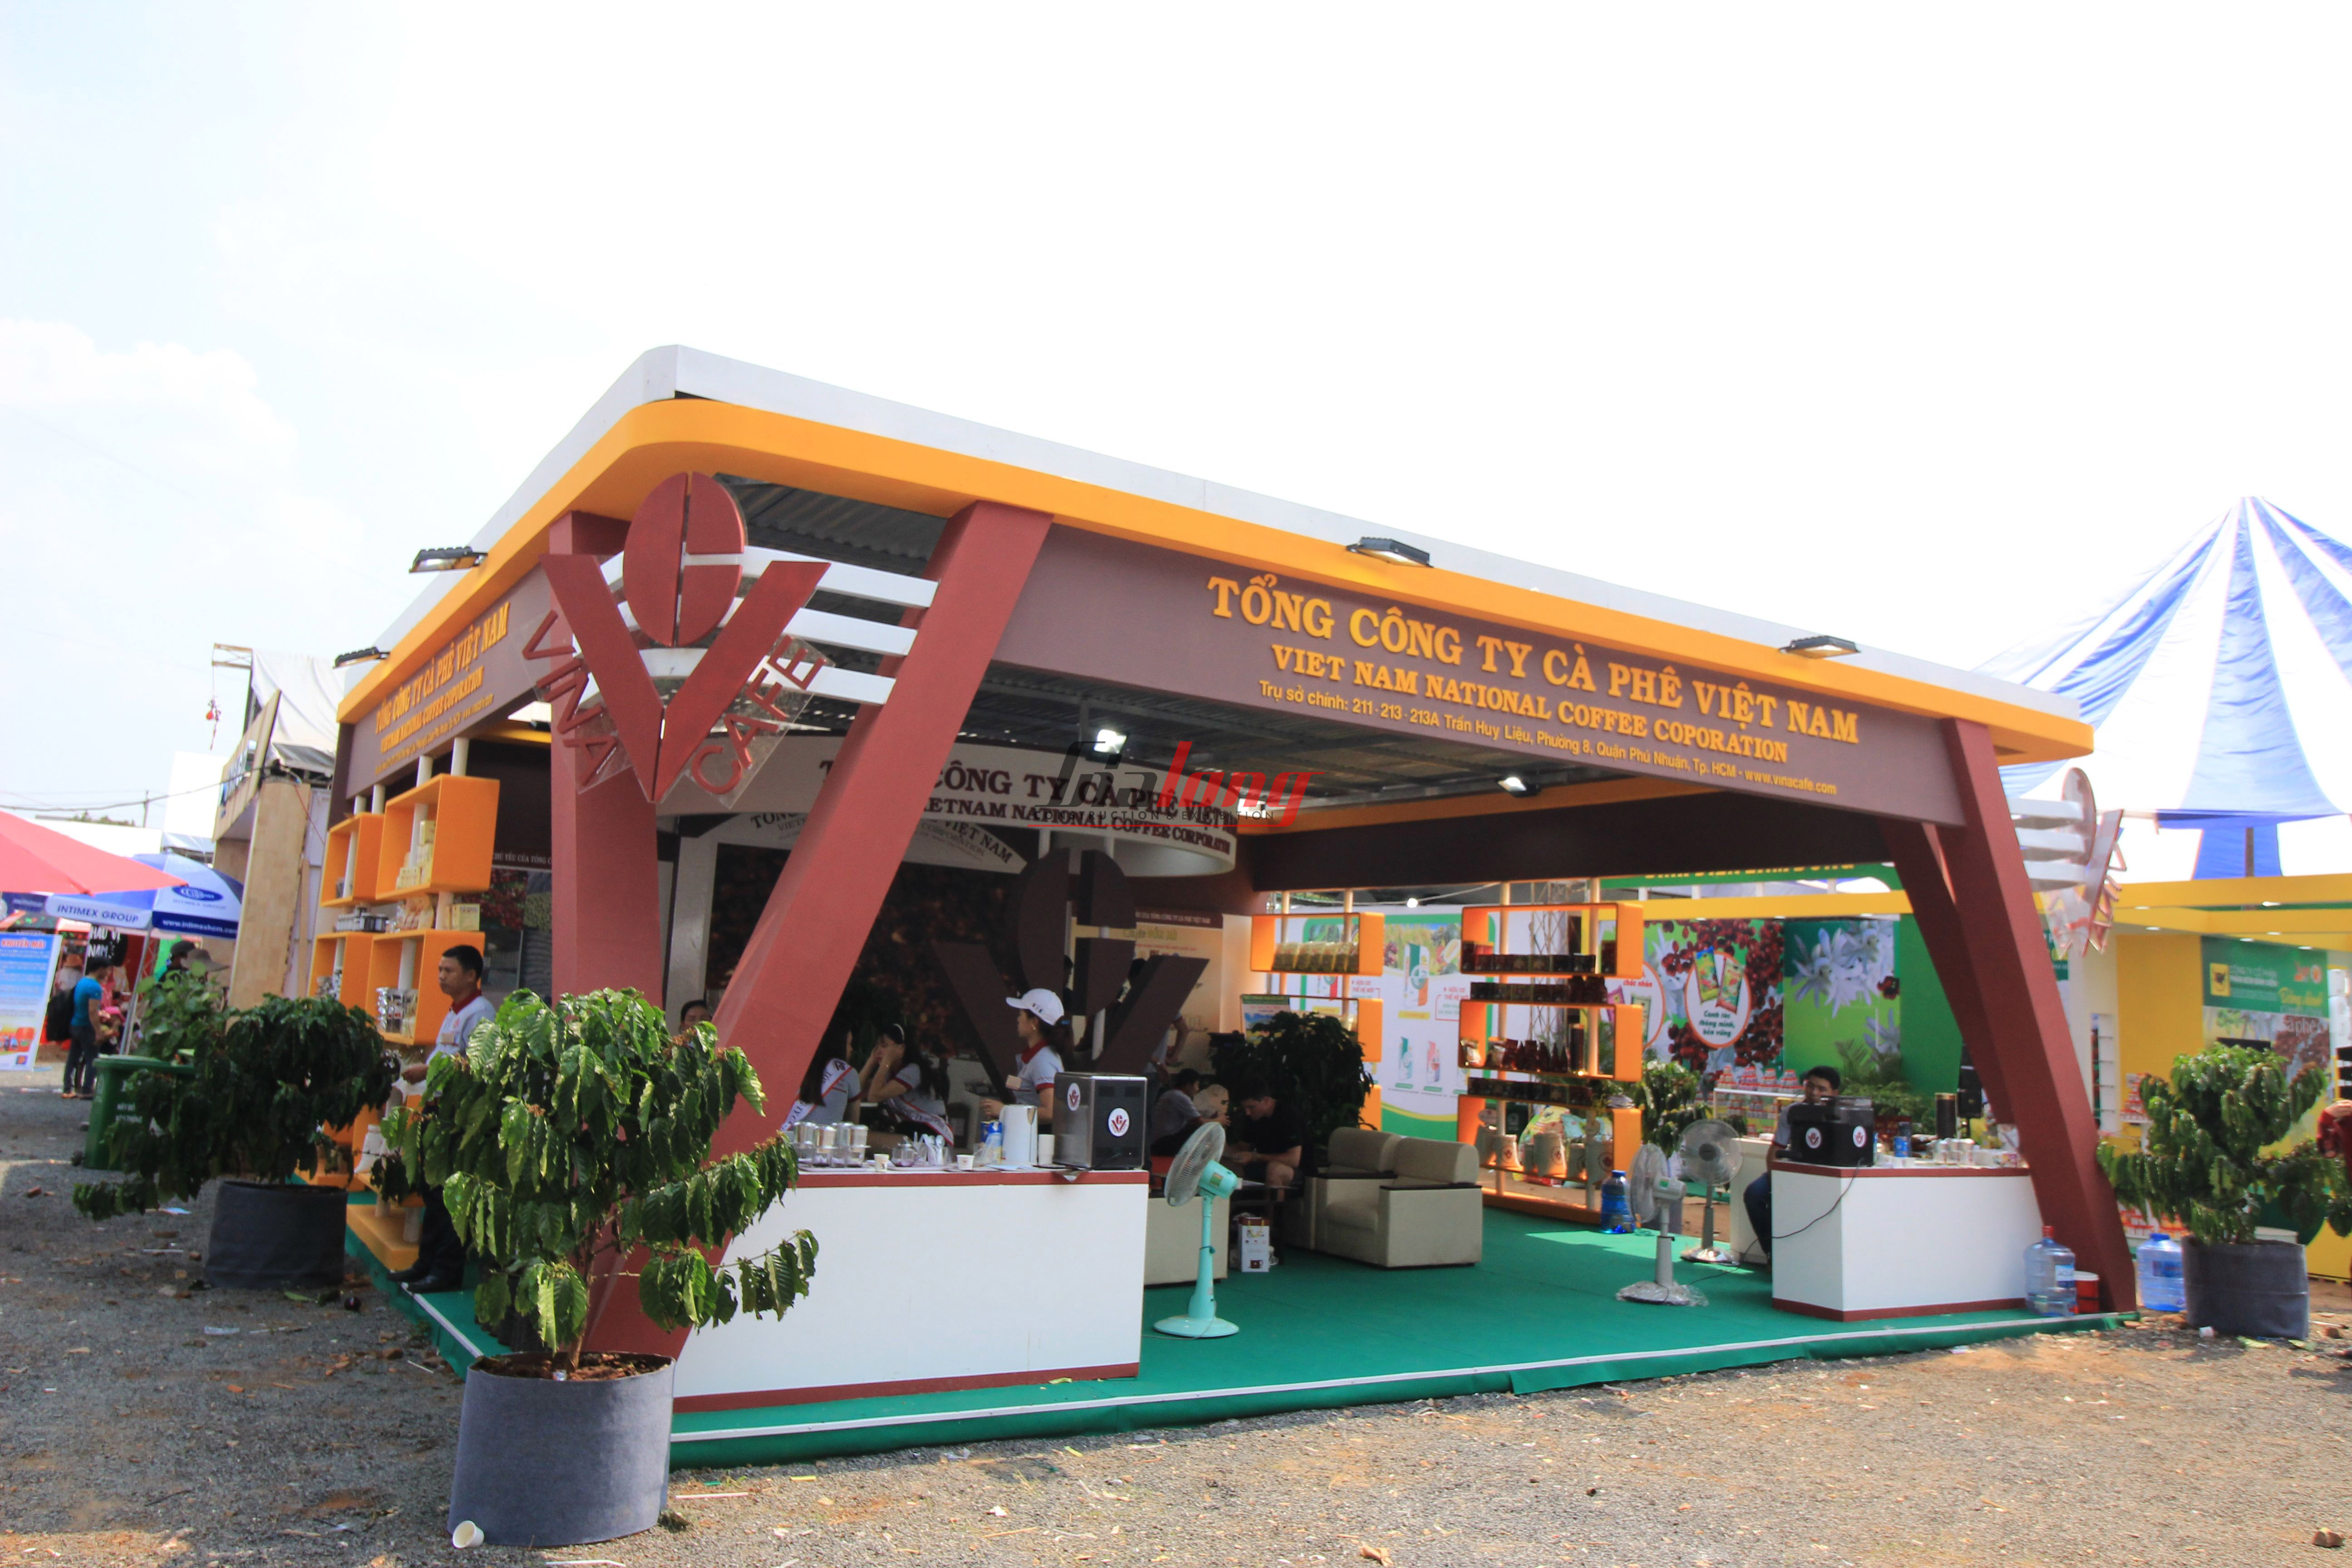 VinaCafe - Thi công hội chợ Cà phê Buôn Ma Thuột - Construction of Buon Ma Thuot Coffee fair booth